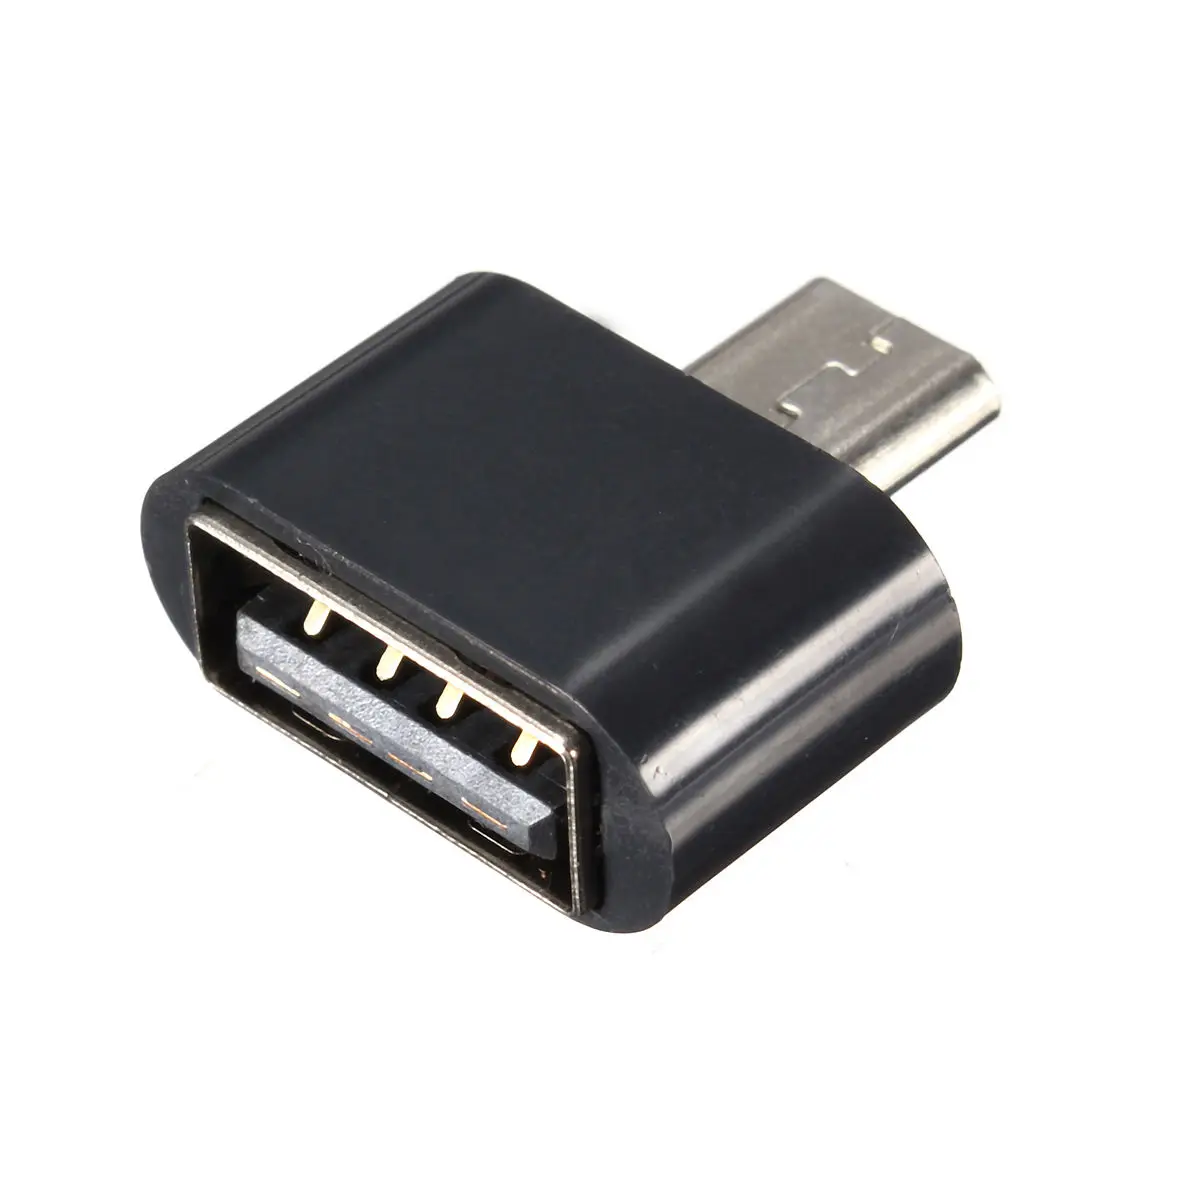 OTG переходник Micro USB USB. Переходник OTG Micro USB YHL-t3. Переходник OTG Micro USB USB 2.0. Переходник ОТГ 2.0 USB 2.0.